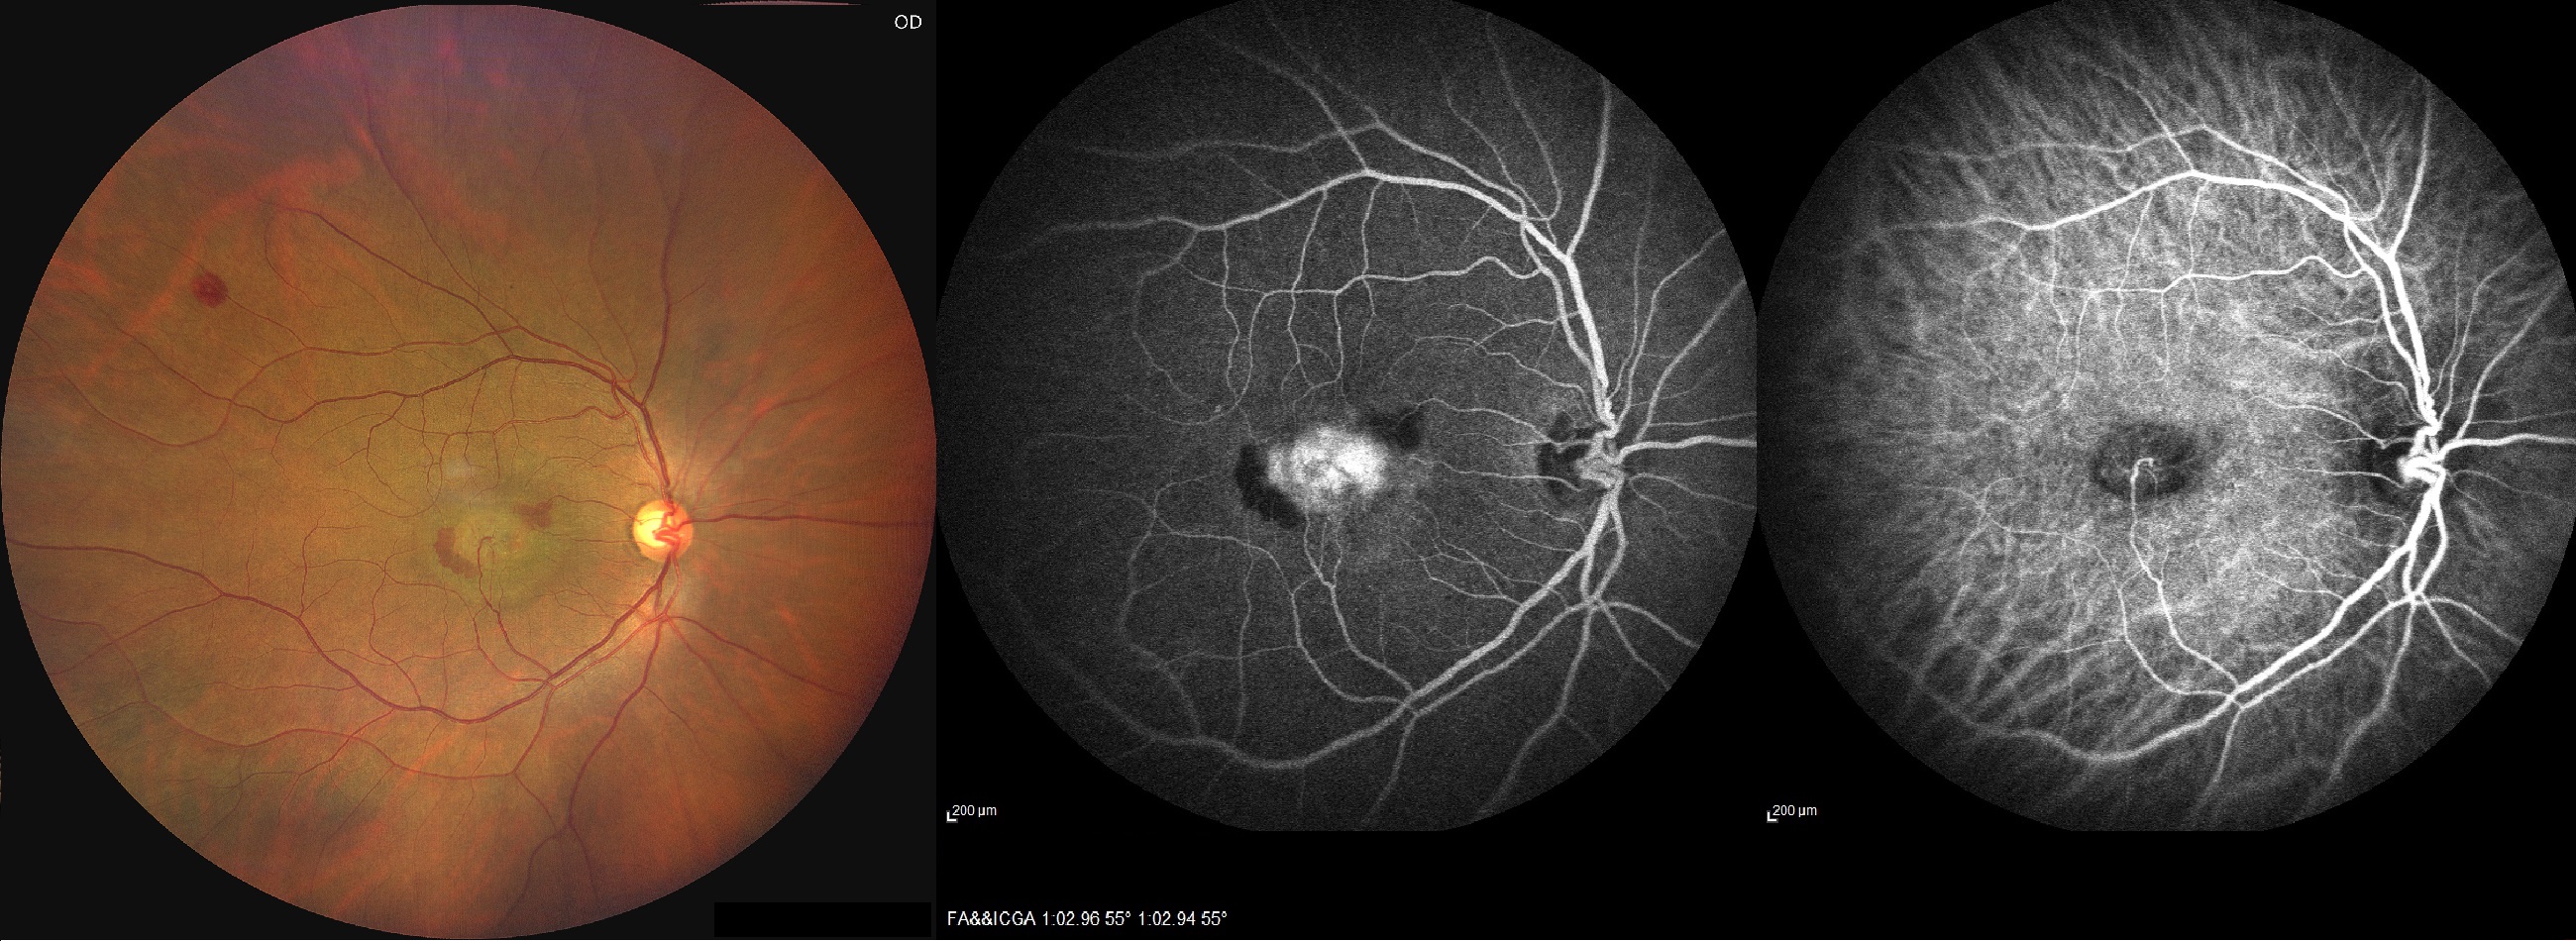 retinal angiomatous proliferation